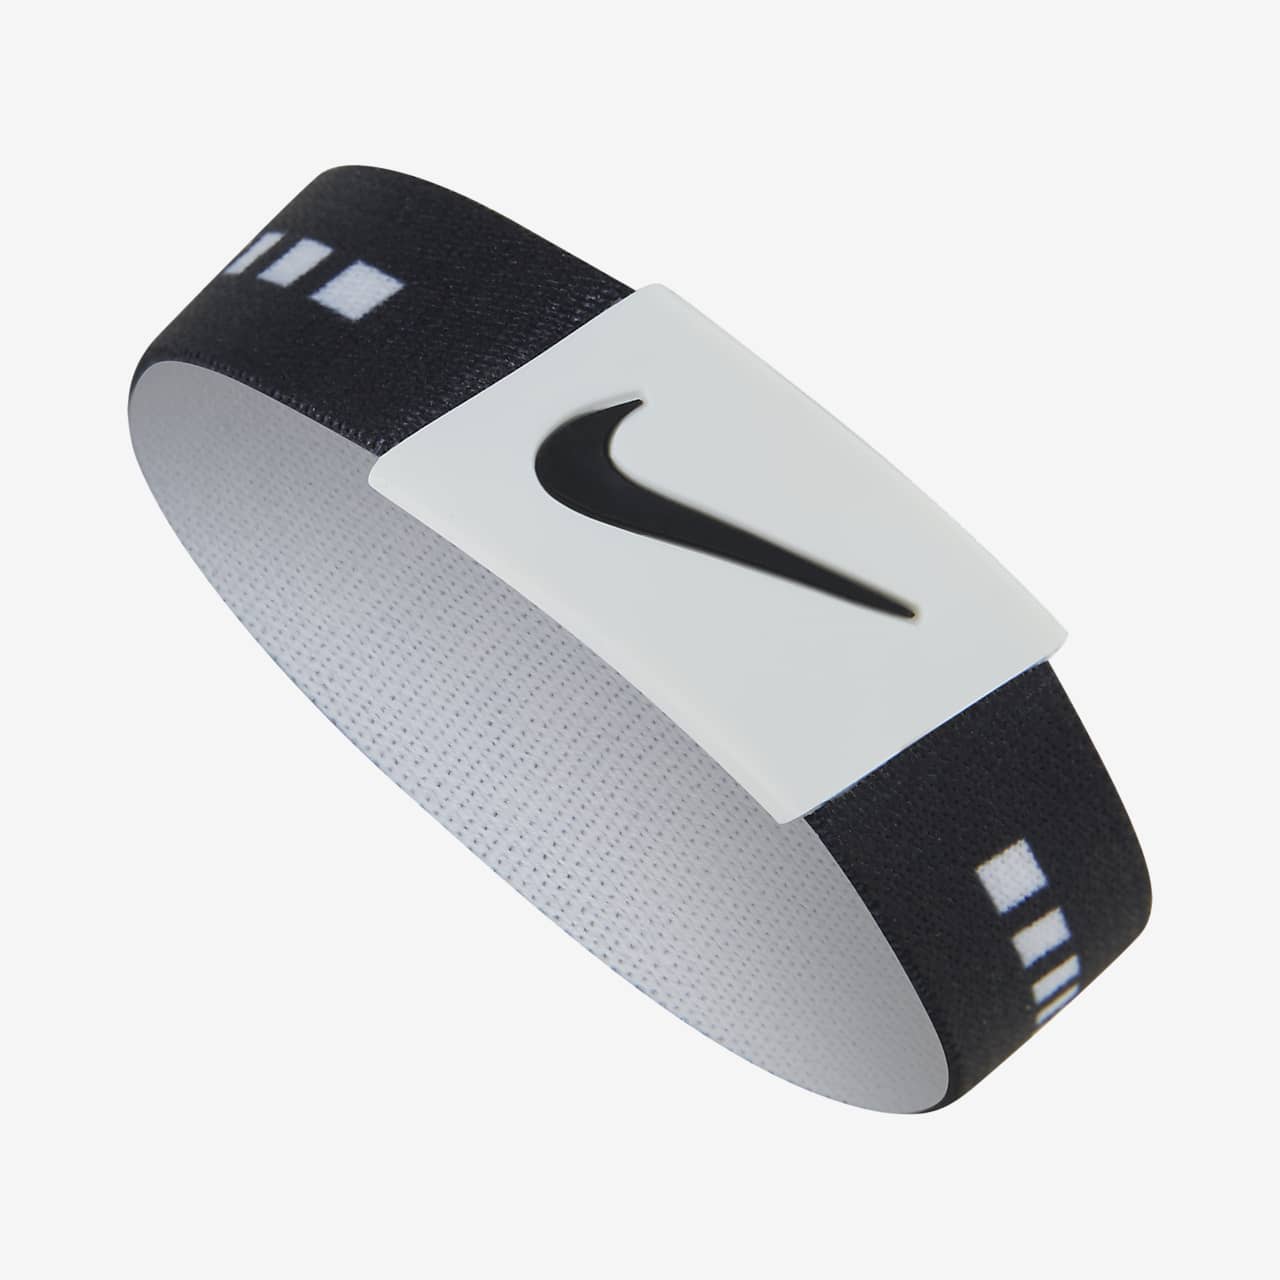 Nike Baller Band Silicone Rubber Bracelet White Orange AF1 RARE FIND | eBay